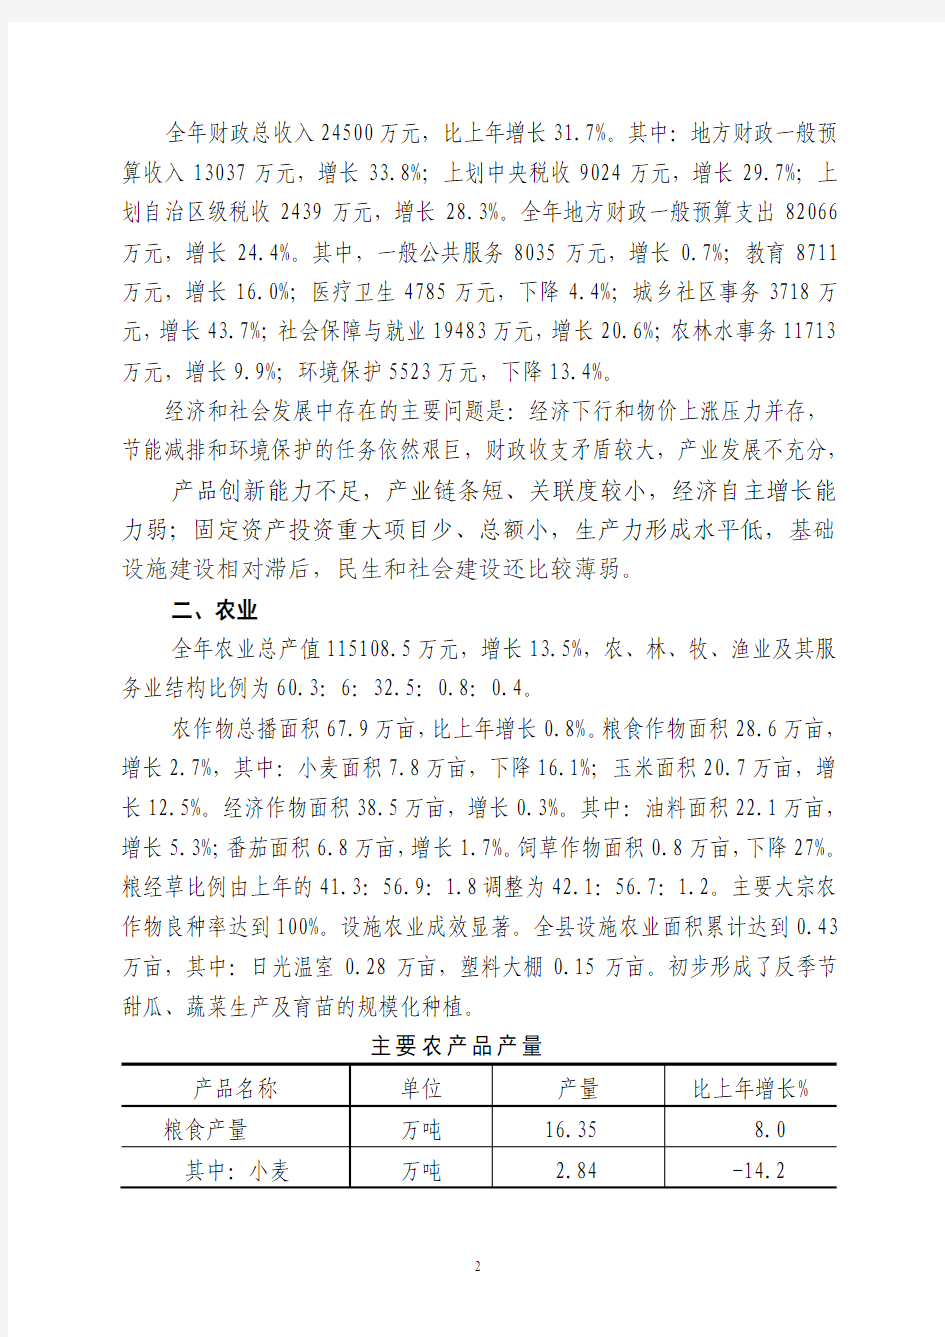 磴口县2011年统计公报